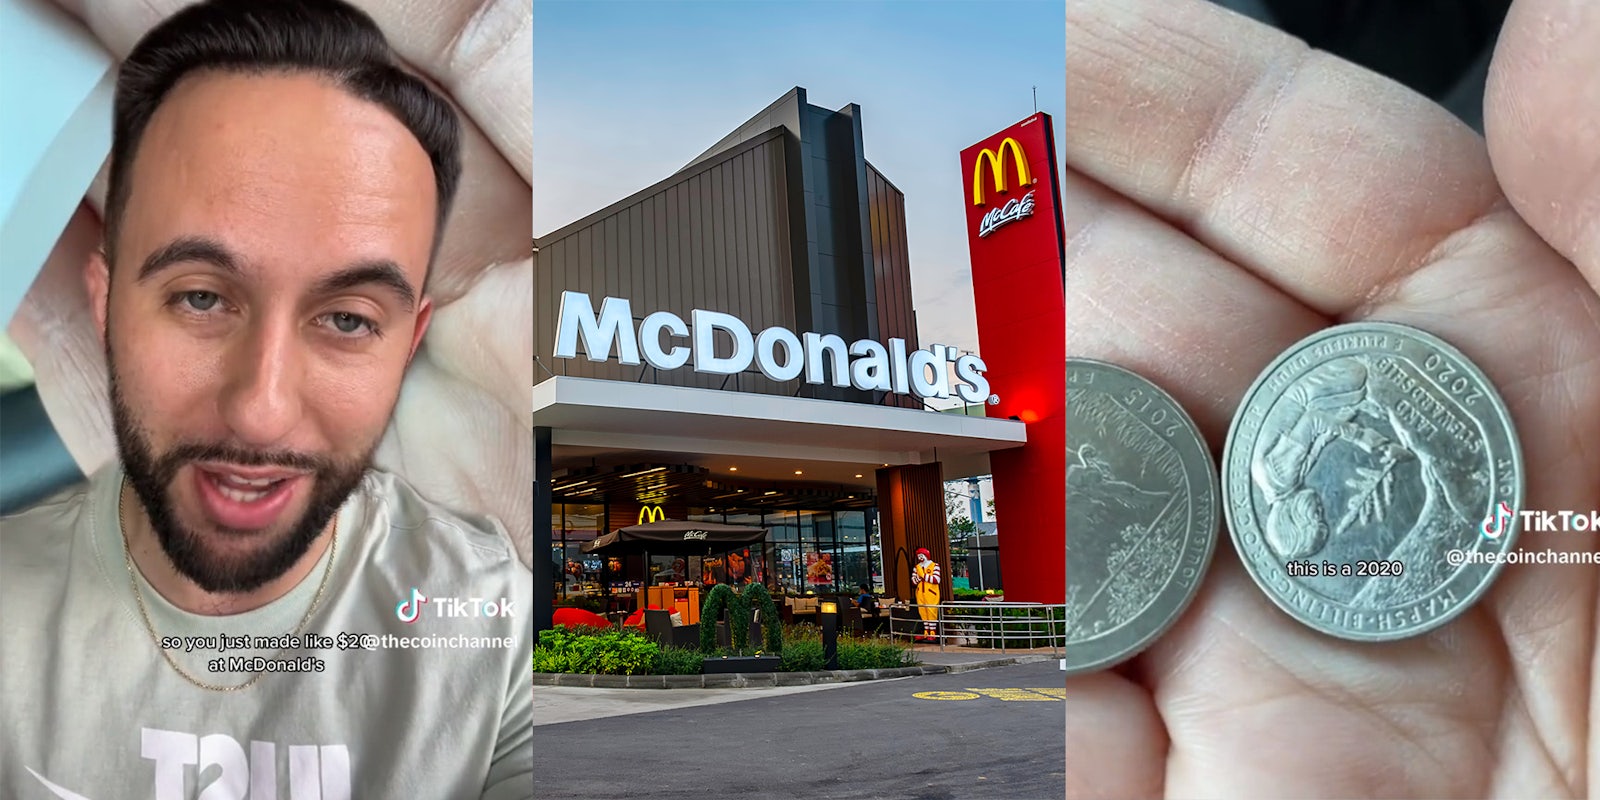 Customer makes $20 at McDonald's